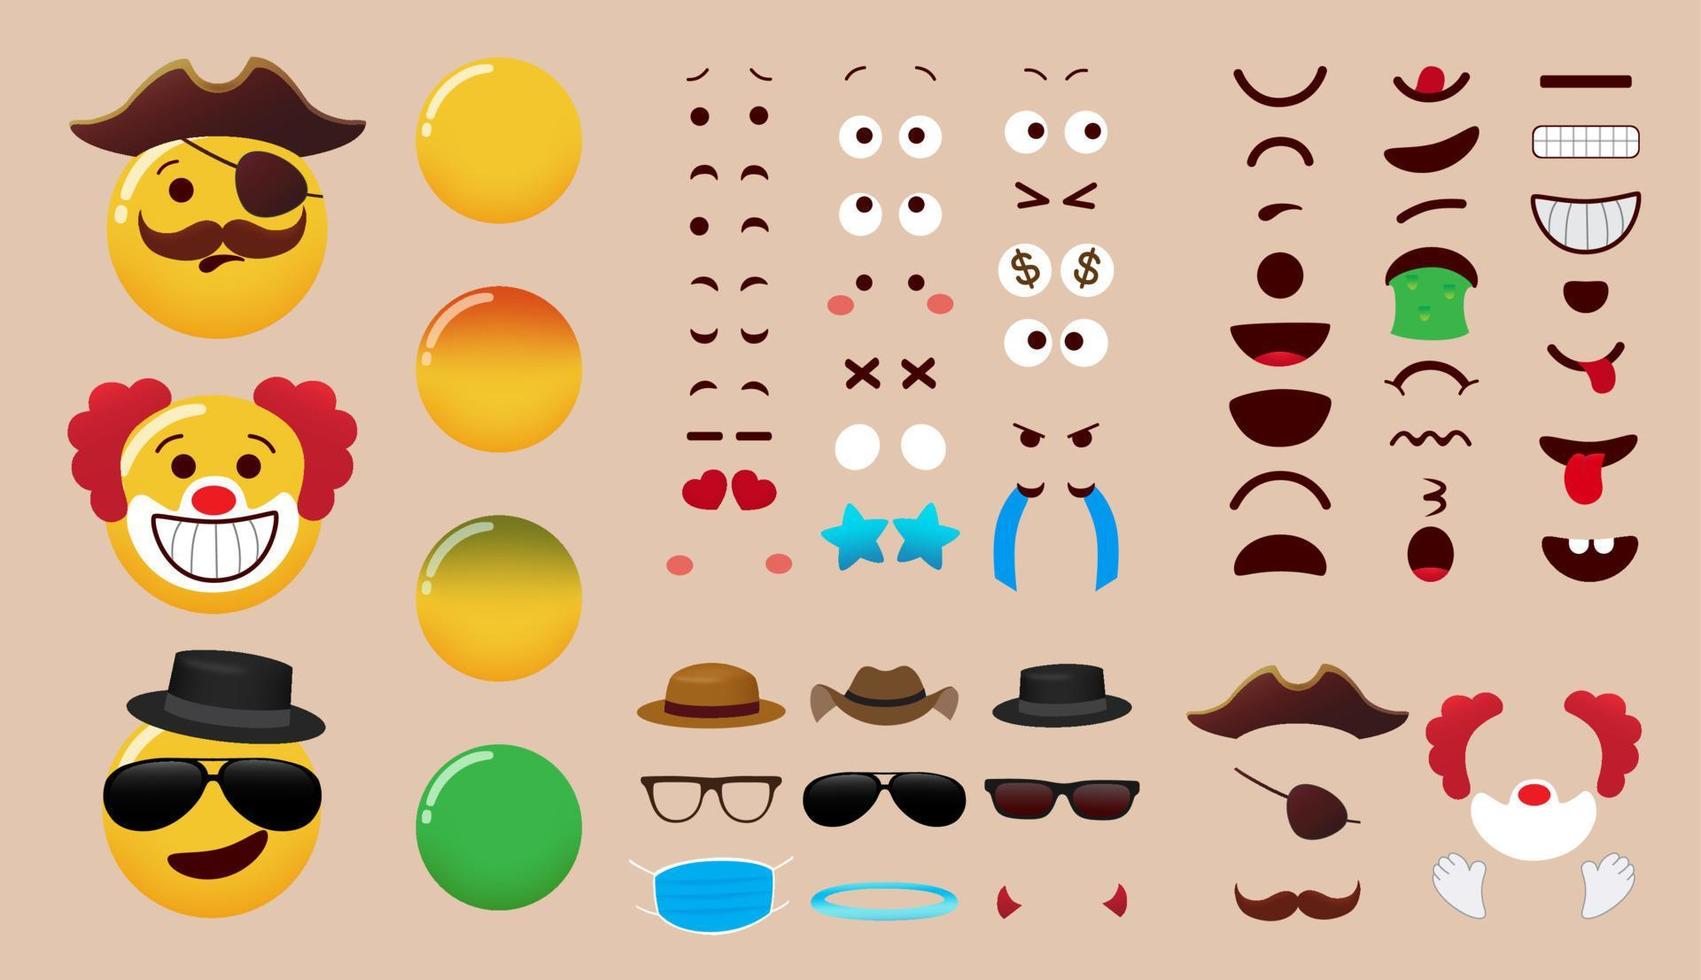 diseño de conjunto de vectores de creador de emoji. Kit de personajes de emoticonos con ojos, boca y elementos editables de vestuario para la colección de piezas de expresión facial de emojis. ilustración vectorial.